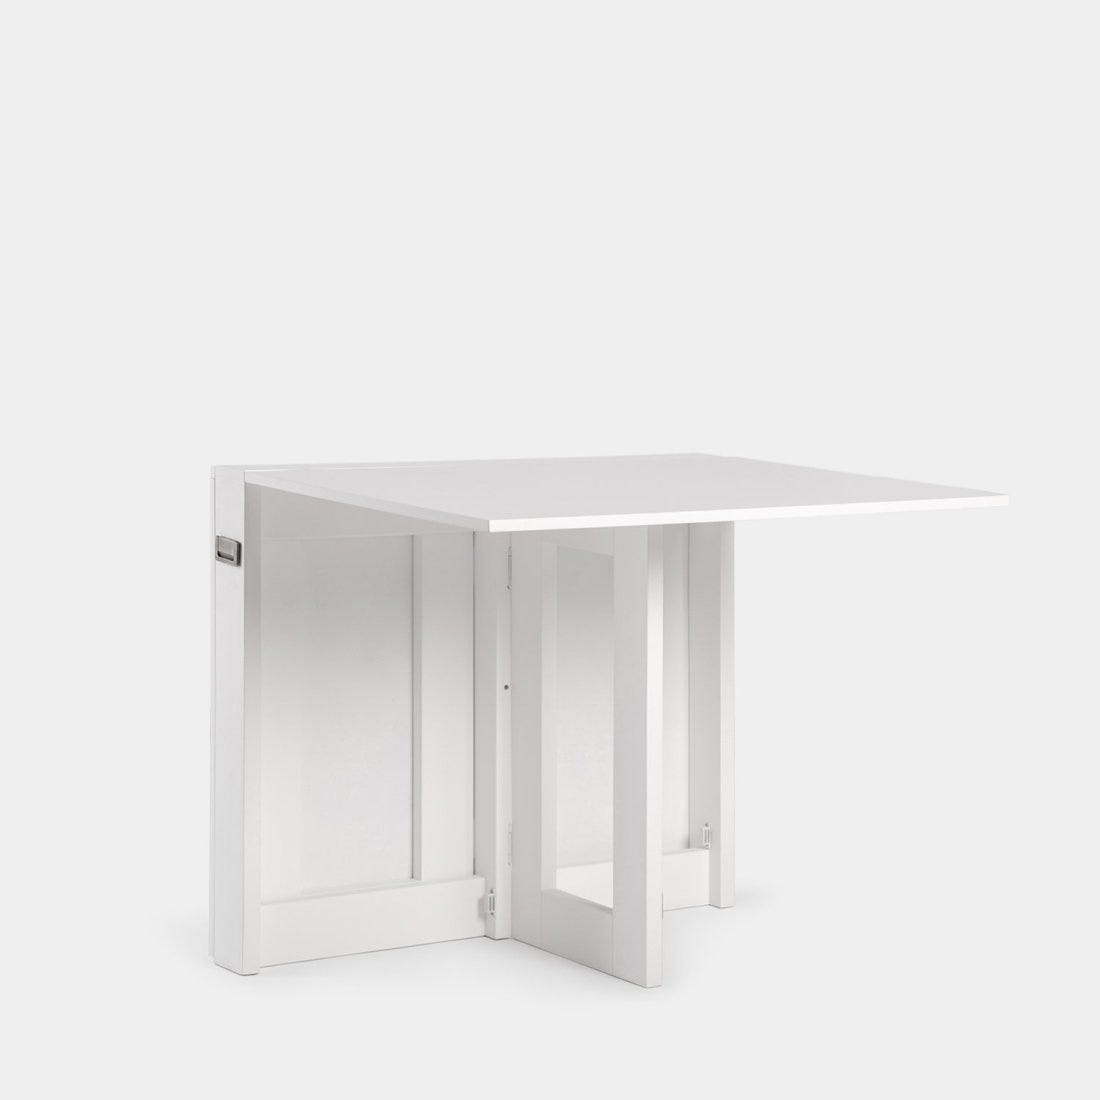 Tan mesa de comedor plegable rectangular 88/160 de madera lacada en blanco